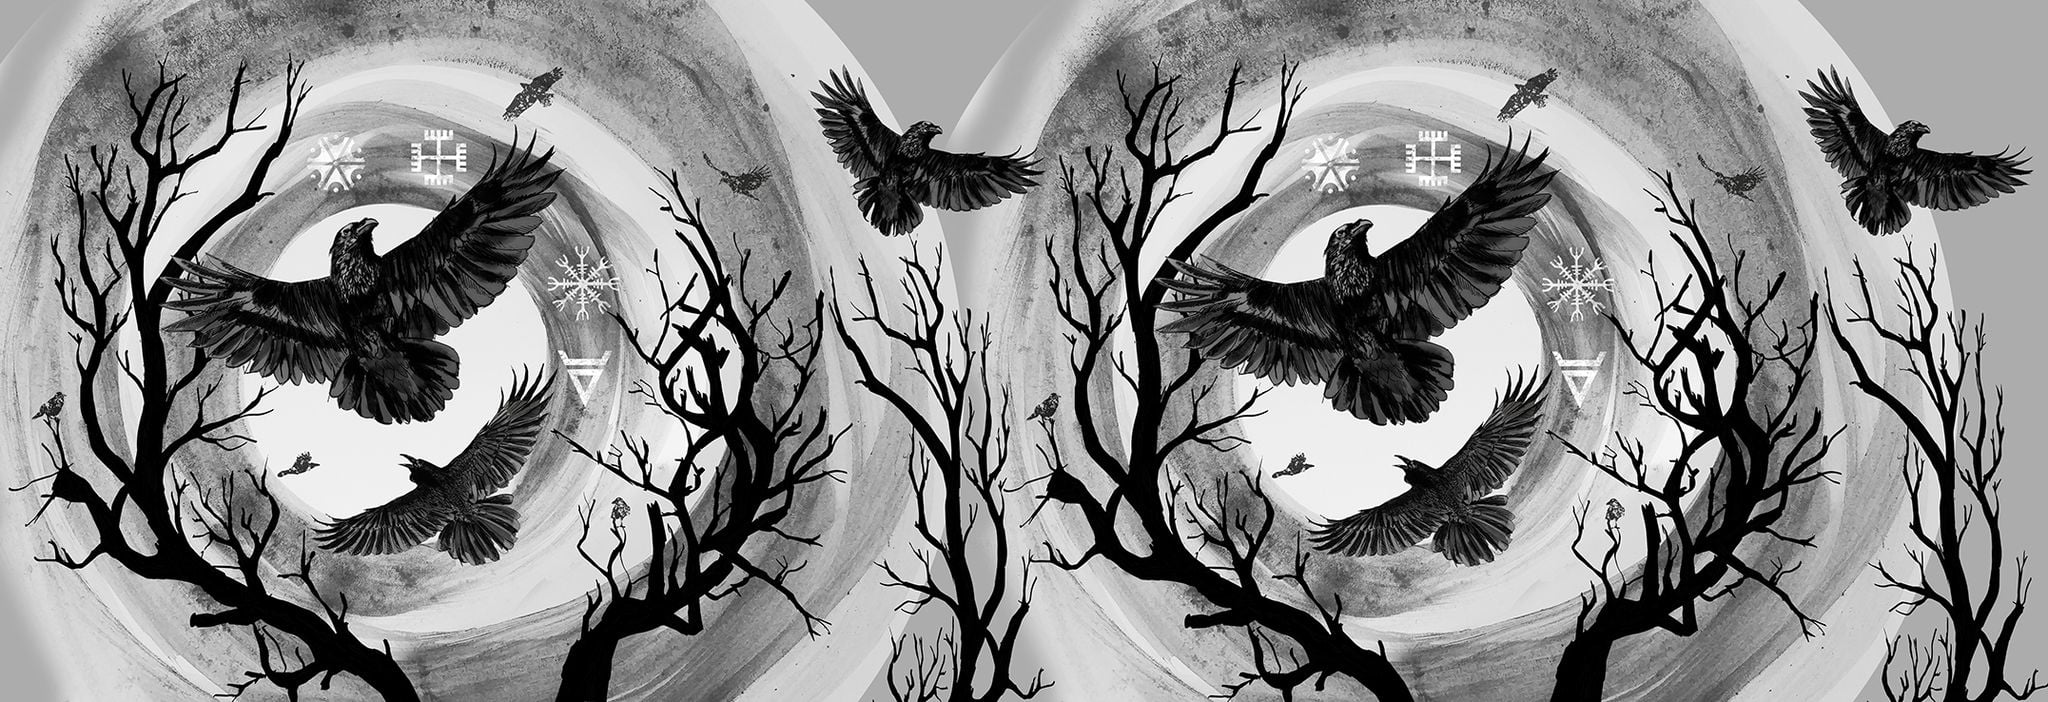 Wild Slings Les corbeaux Corbeaux de l’orage La nuit (лен) Image